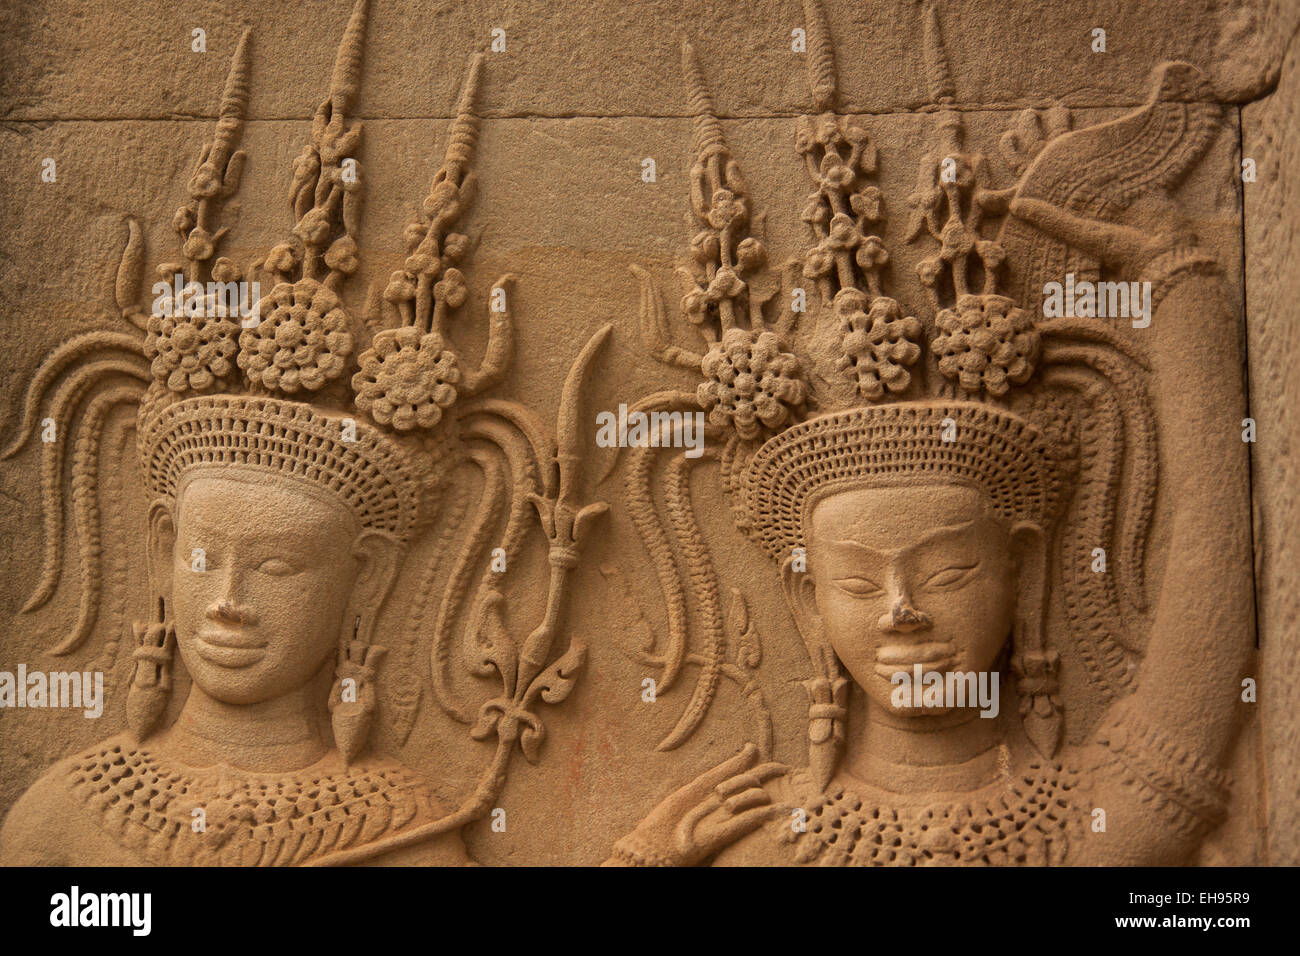 Apsara dancers stone carving Stock Photo